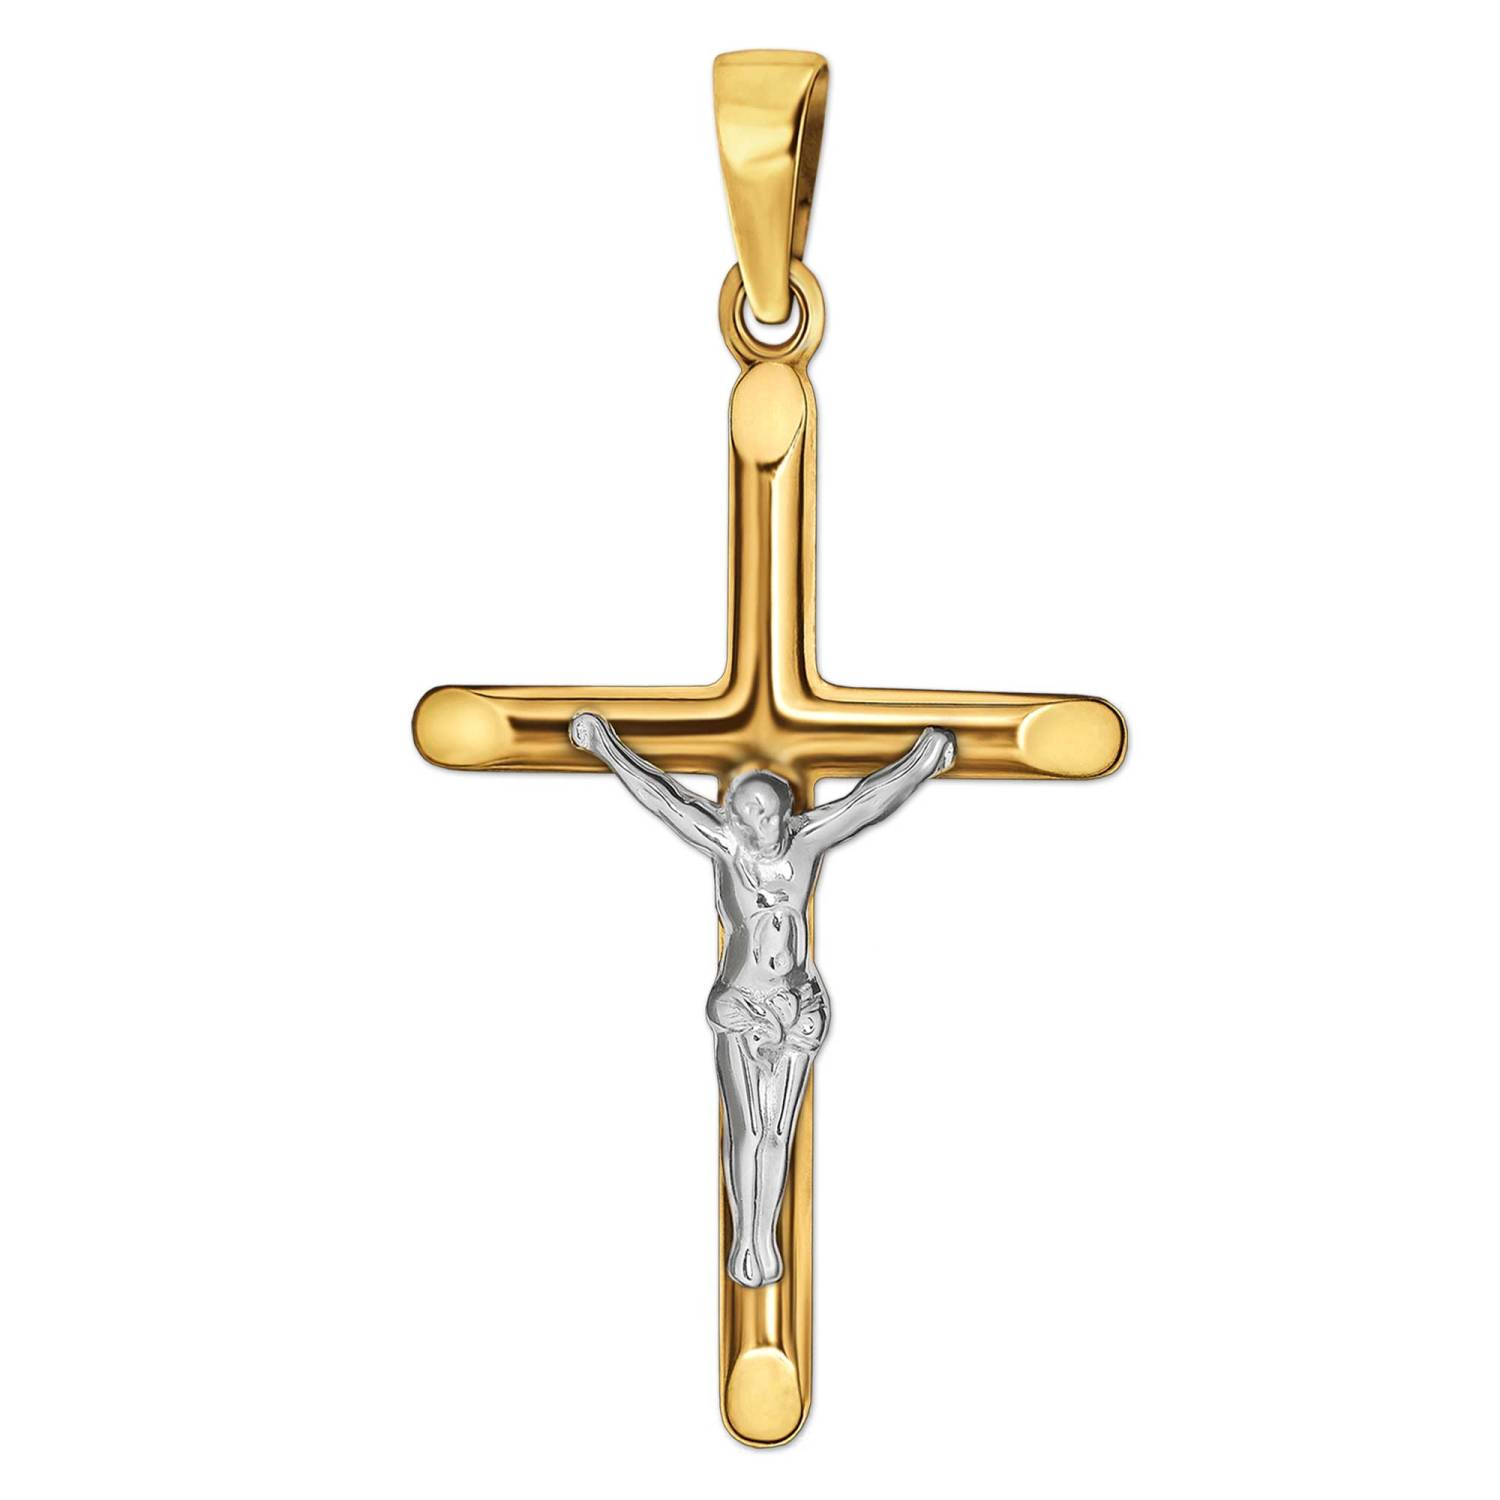 Goldener Anhänger Jesus Kreuz 26 mm glänzend schmale Balkenenden abgeflacht 333 Gold 8 Karat